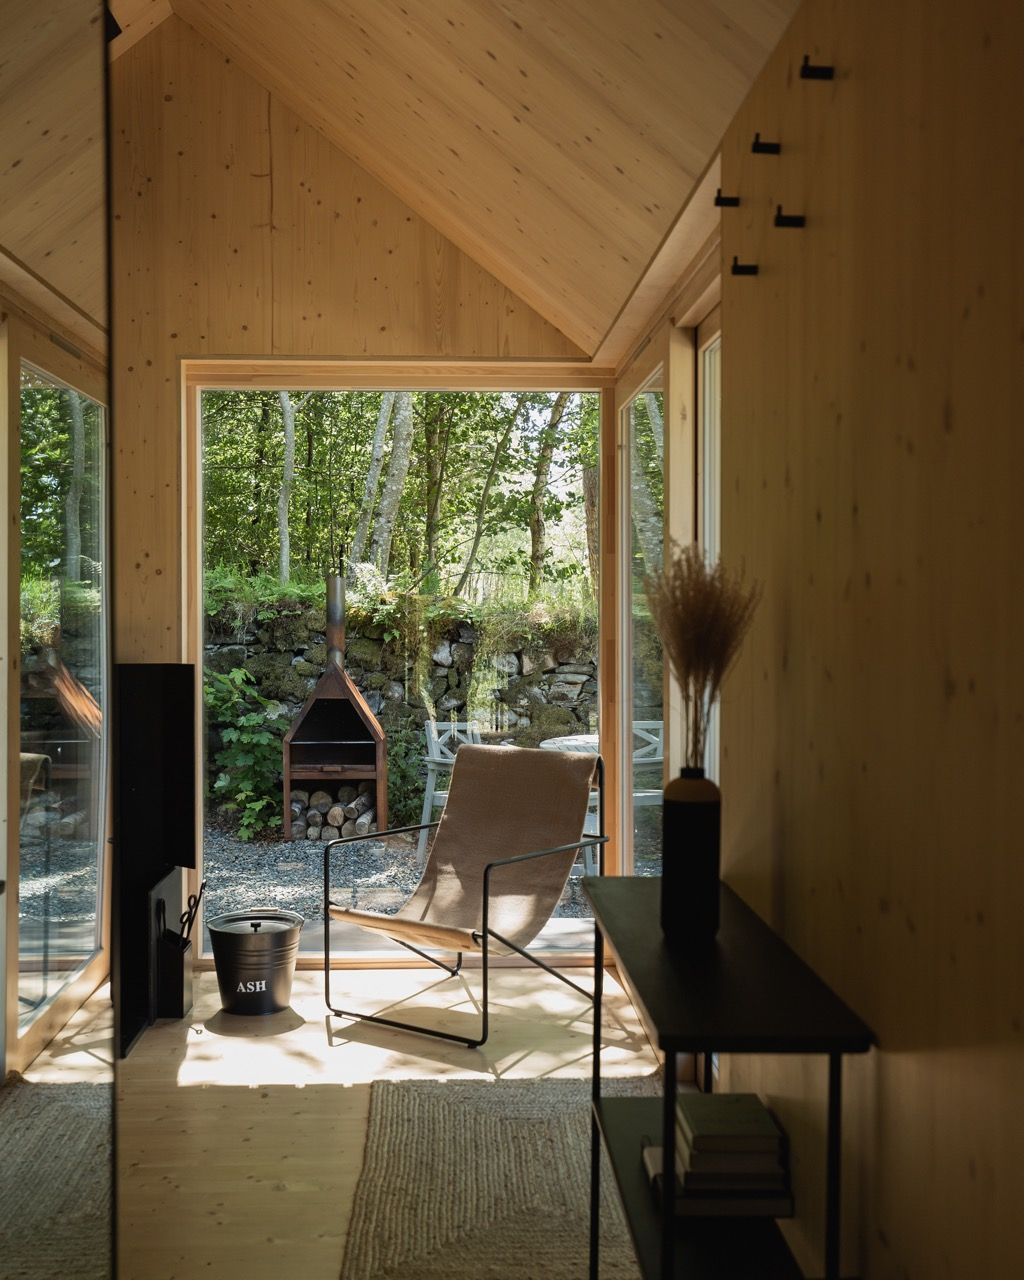 Luxury Inside of modern wooden cabin.